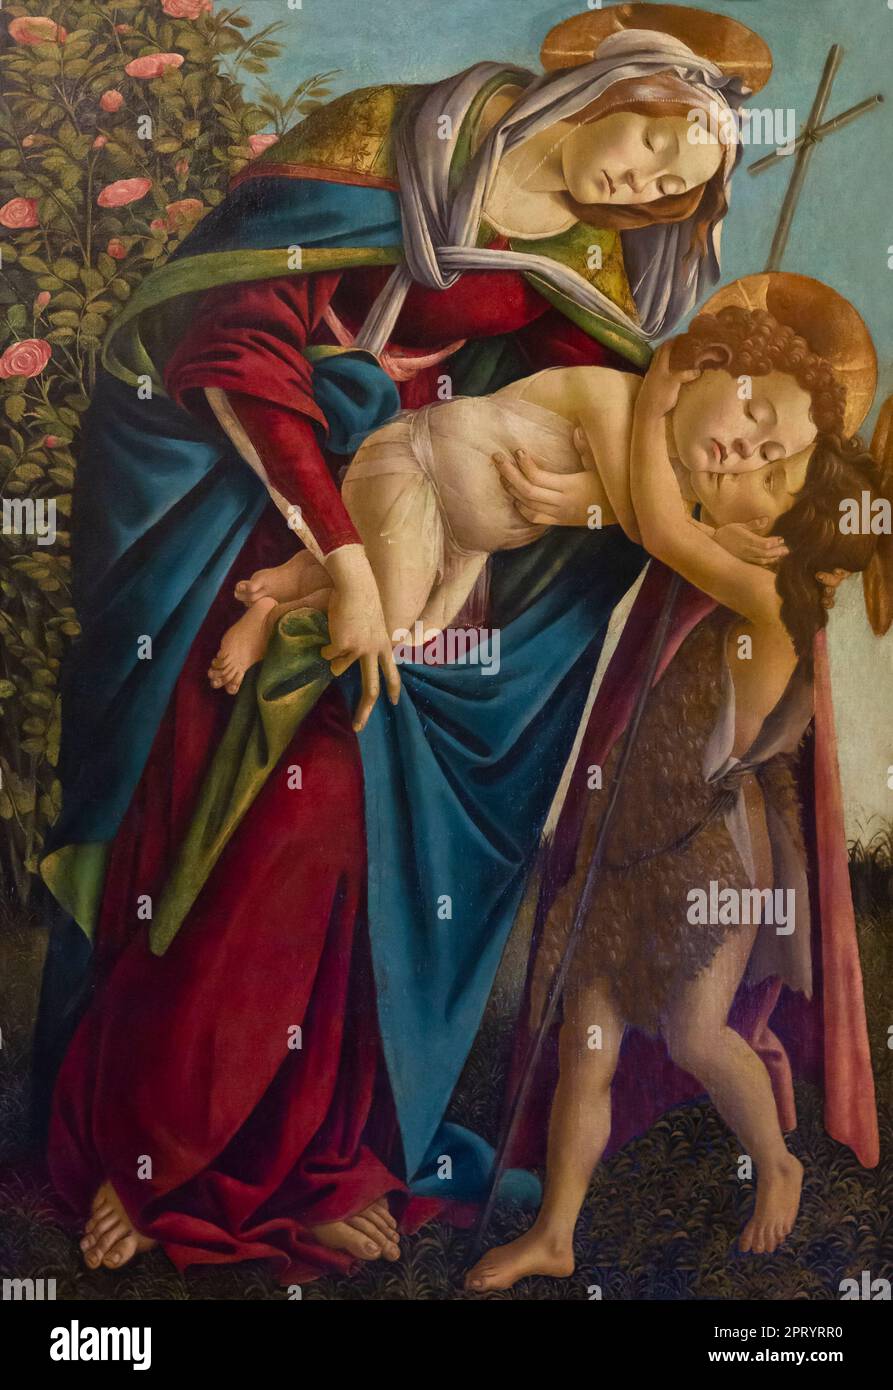 Madonna mit Kind und den Jugendlichen der hl. Johannes der Täufer, Sandro Botticelli, 1495, Galerie Palatina, Palazzo Pitti, Palazzo Pitti, Florenz, Toskana, Italien, Stockfoto